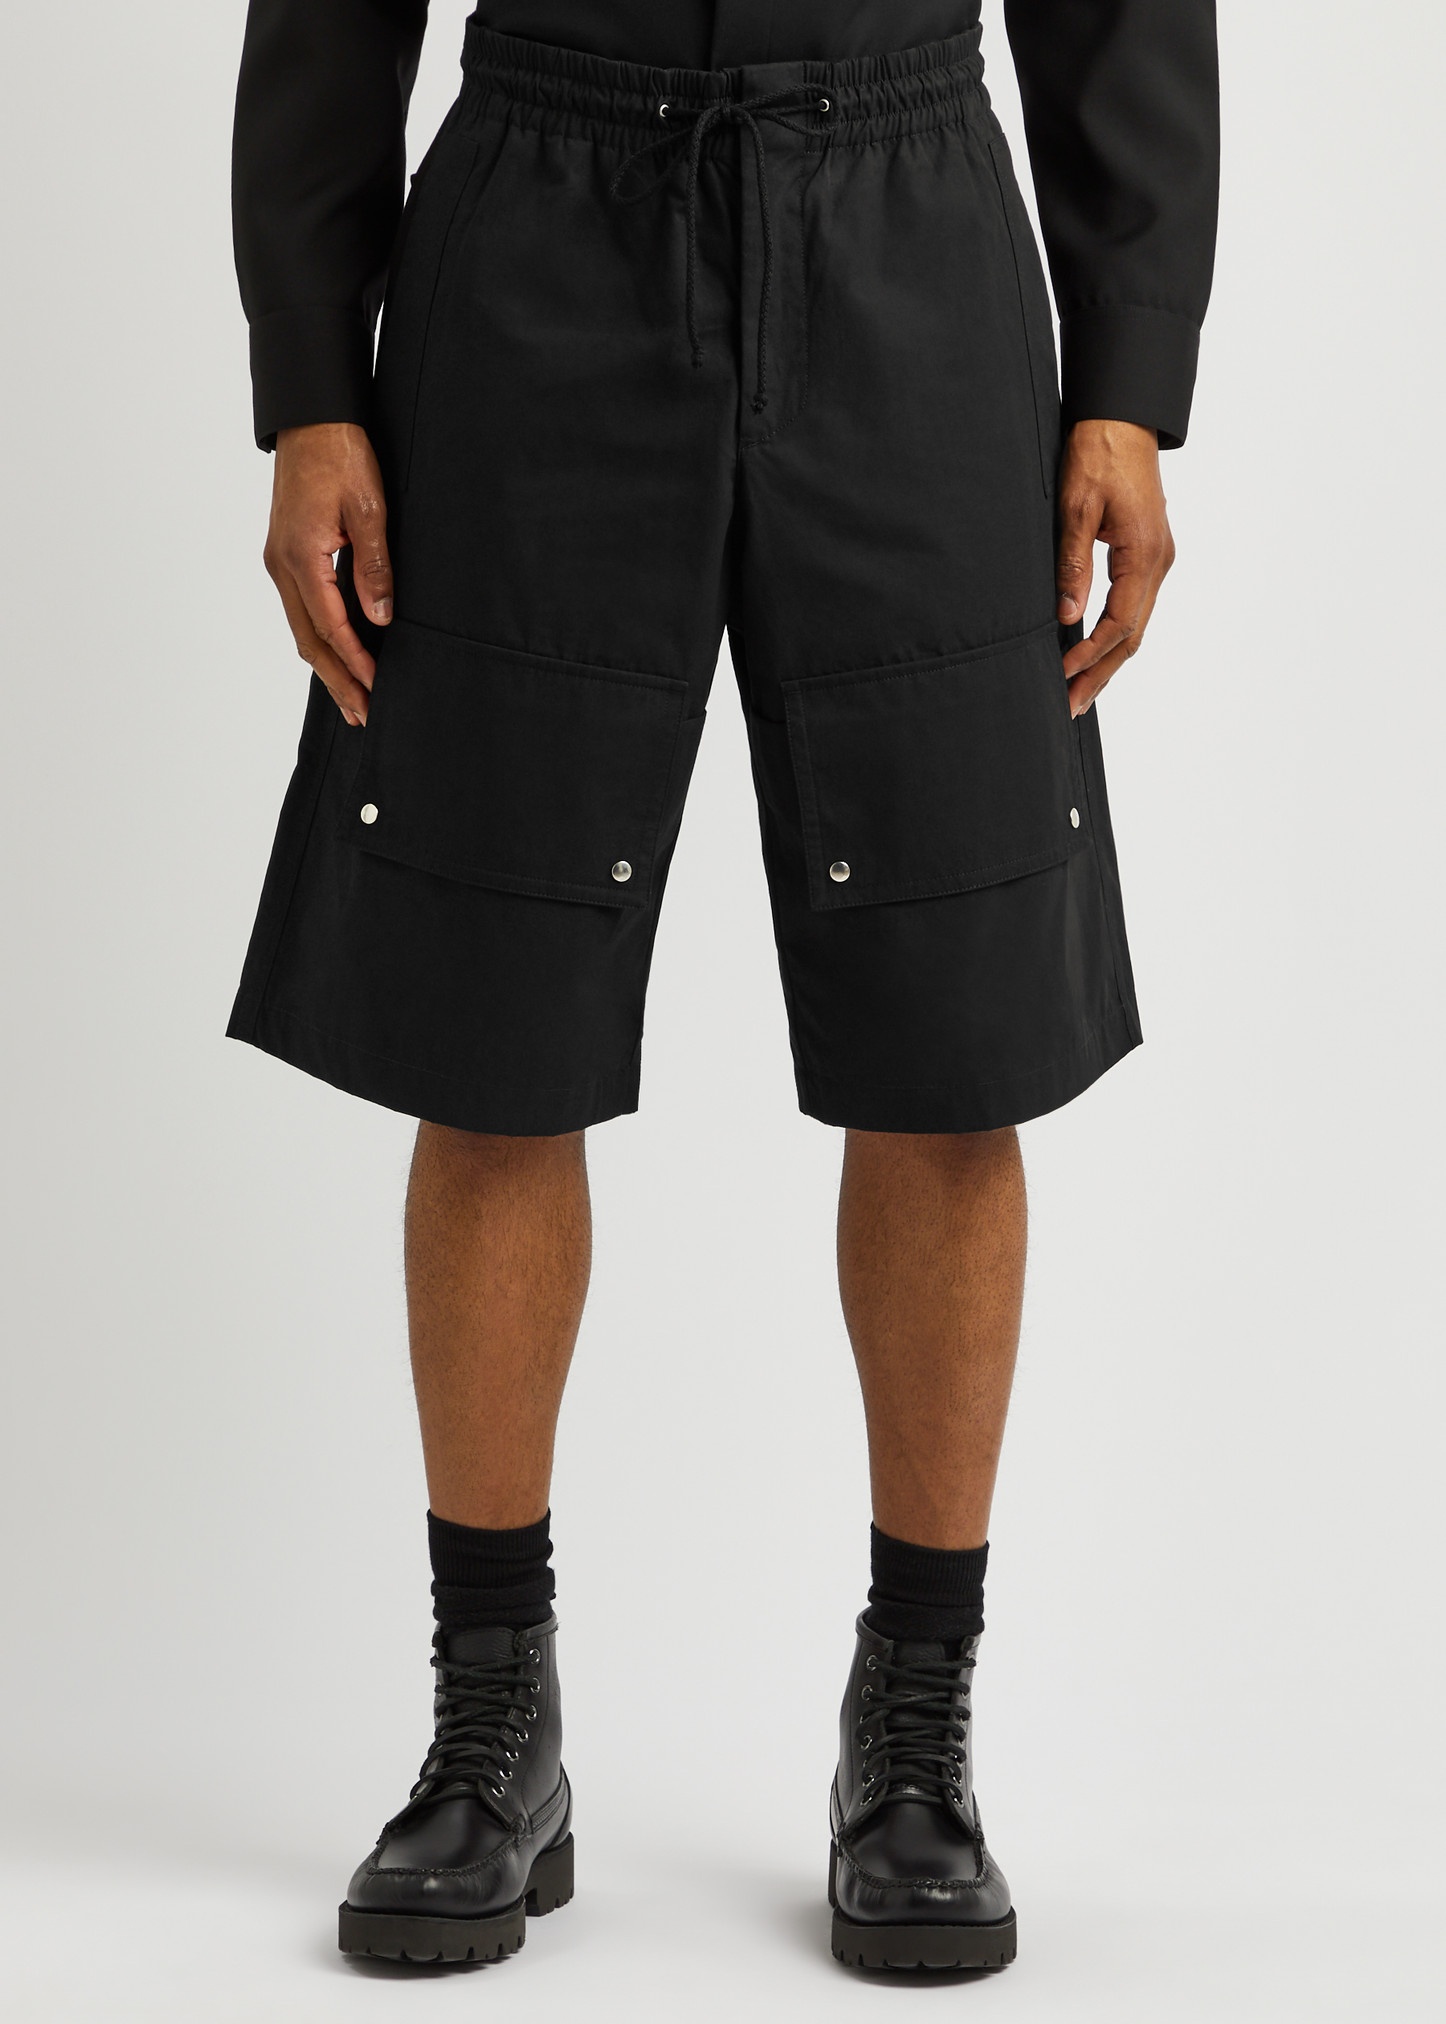 Zeus cotton shorts - 2